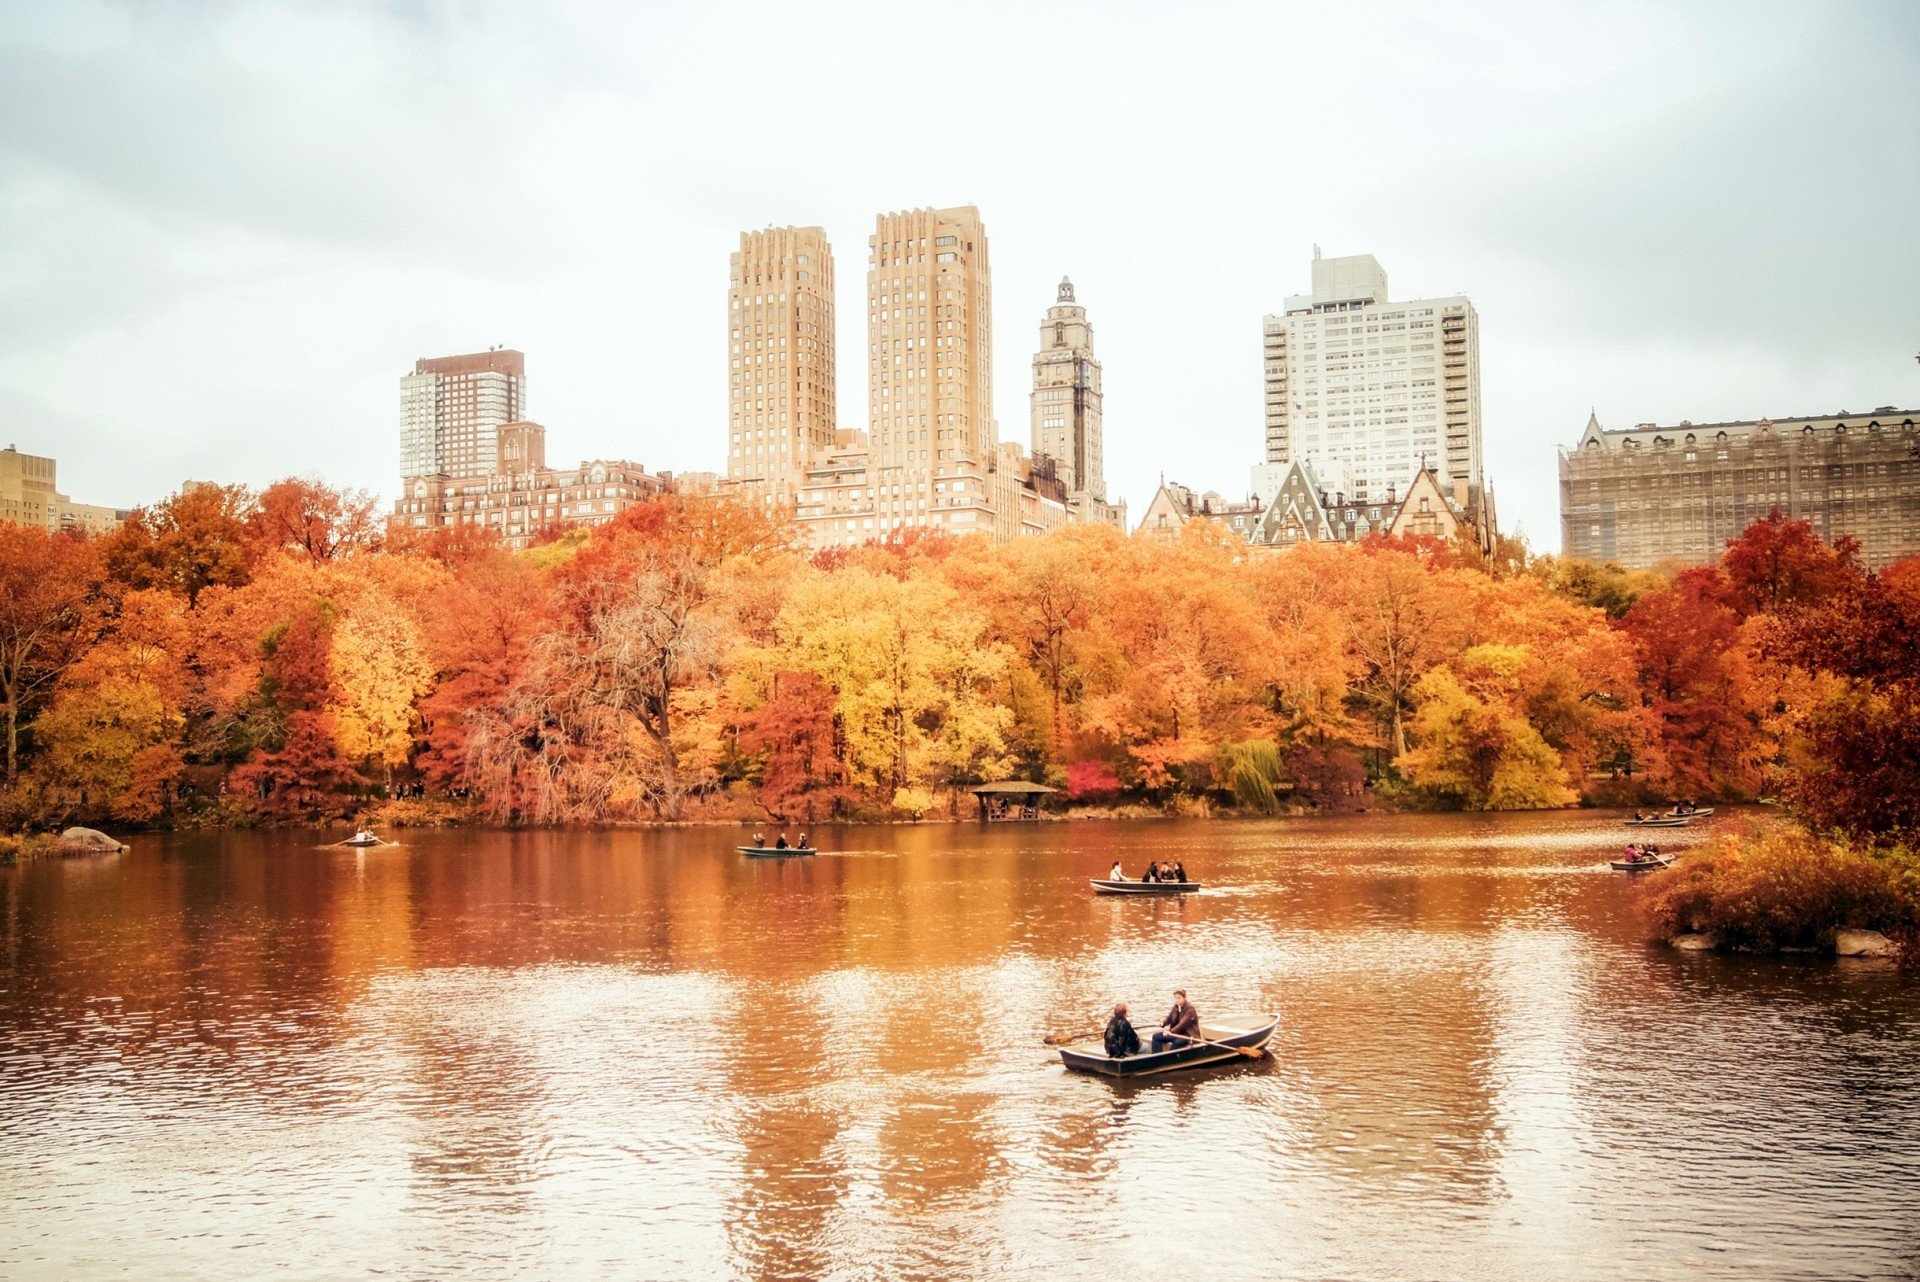 Централ парк Нью-Йорк. Осенний Нью-Йорк централ парк. Осень в Нью-Йорке Центральный парк. Центральный парк Нью-Йорк осенью.